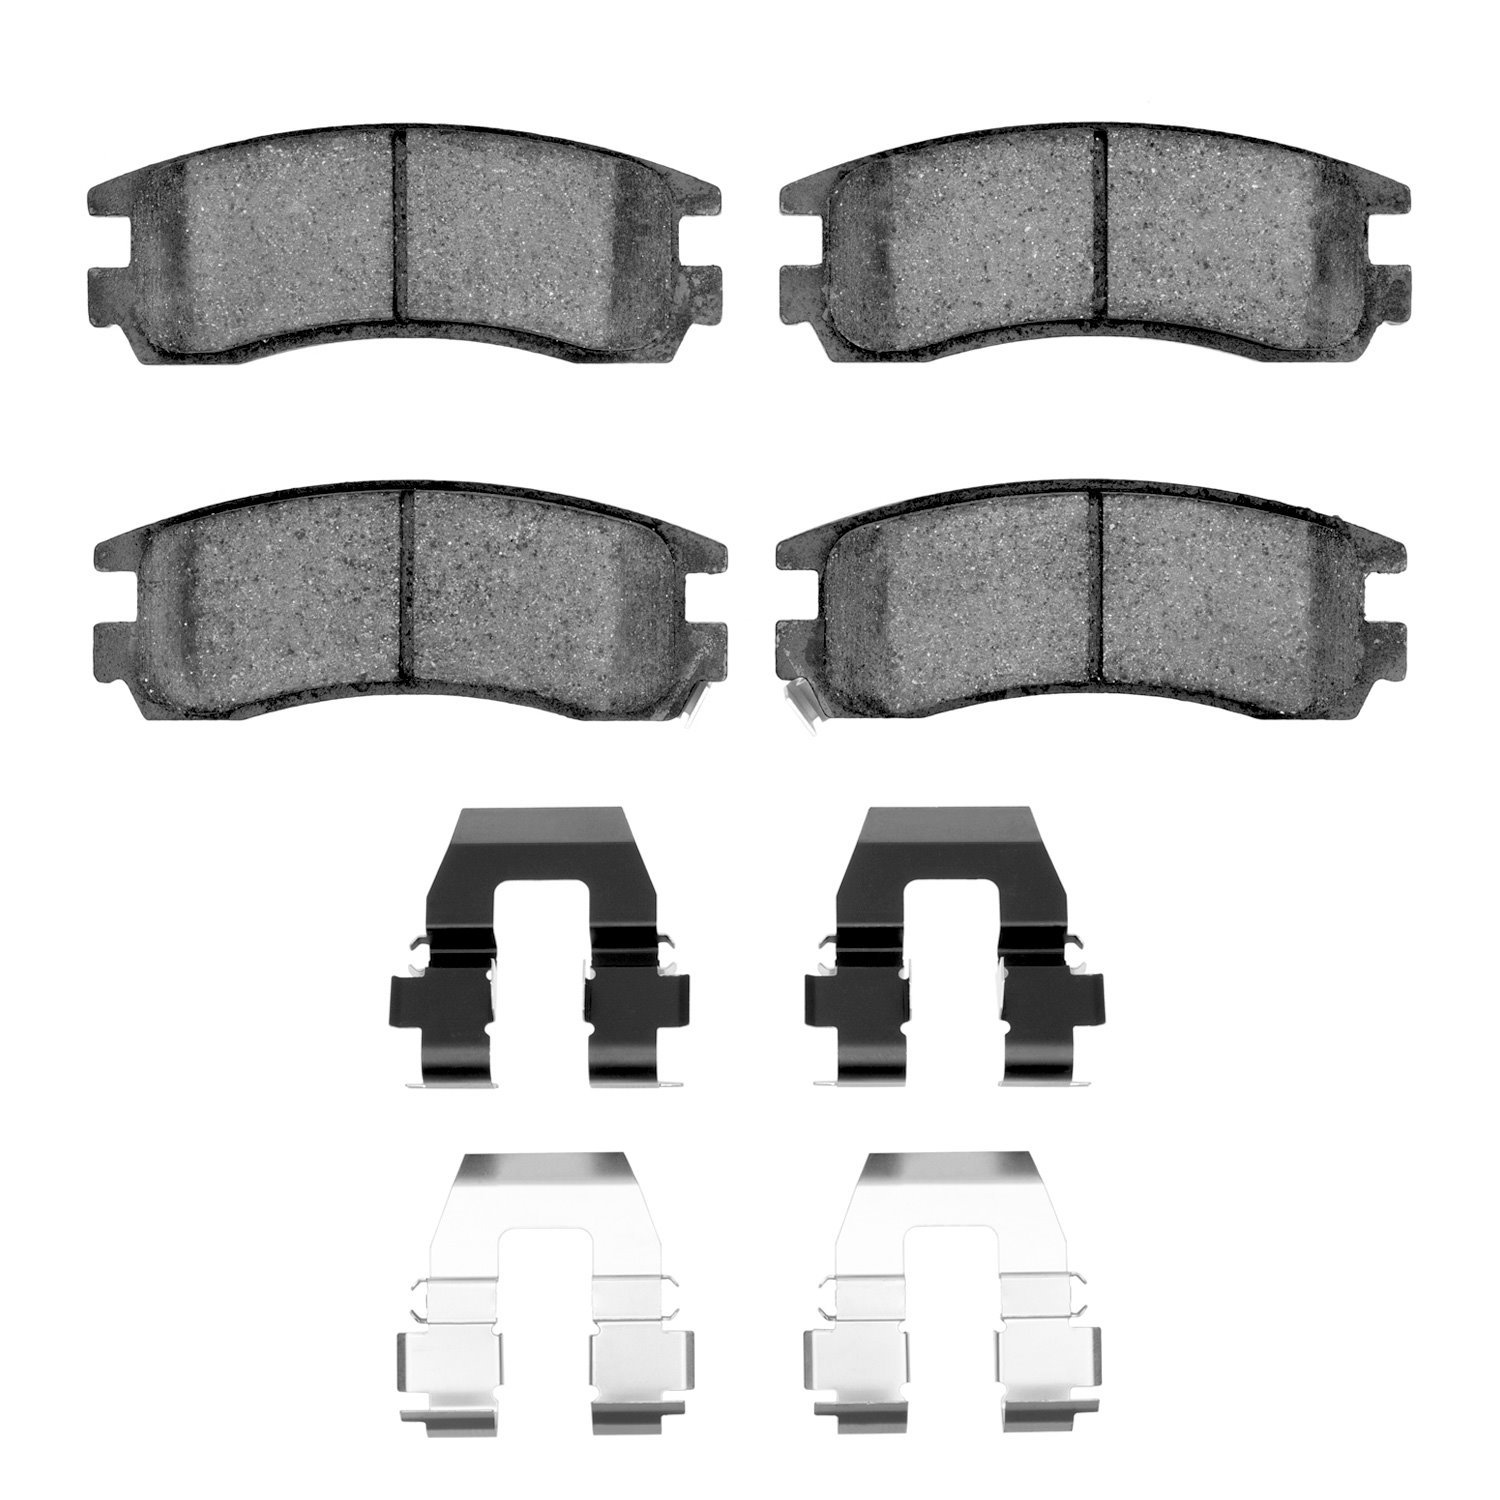 1310-0698-01 3000-Series Ceramic Brake Pads & Hardware Kit, 1997-2010 GM, Position: Rear